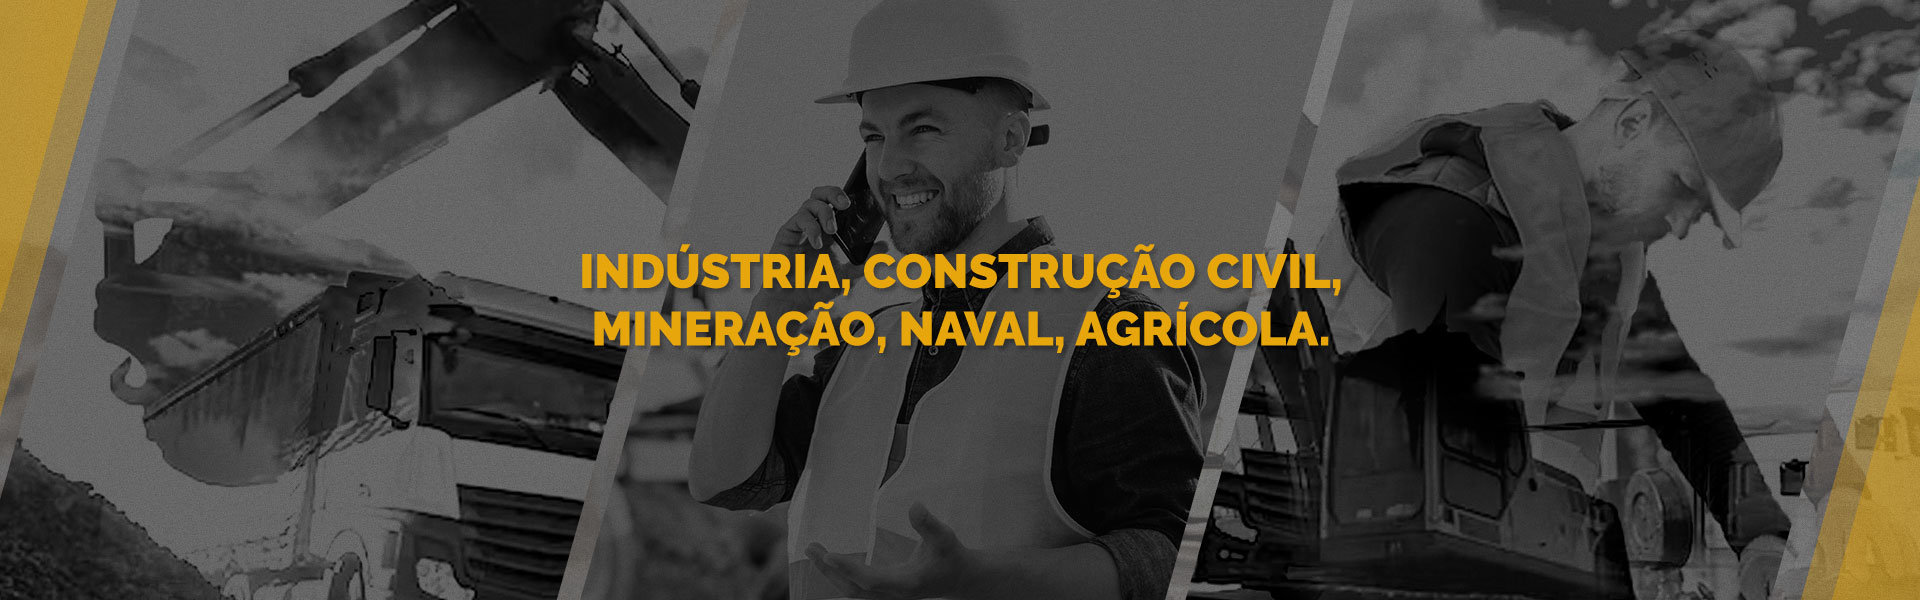 Indústria, Construção Civil, Mineração, Naval e Agrícola